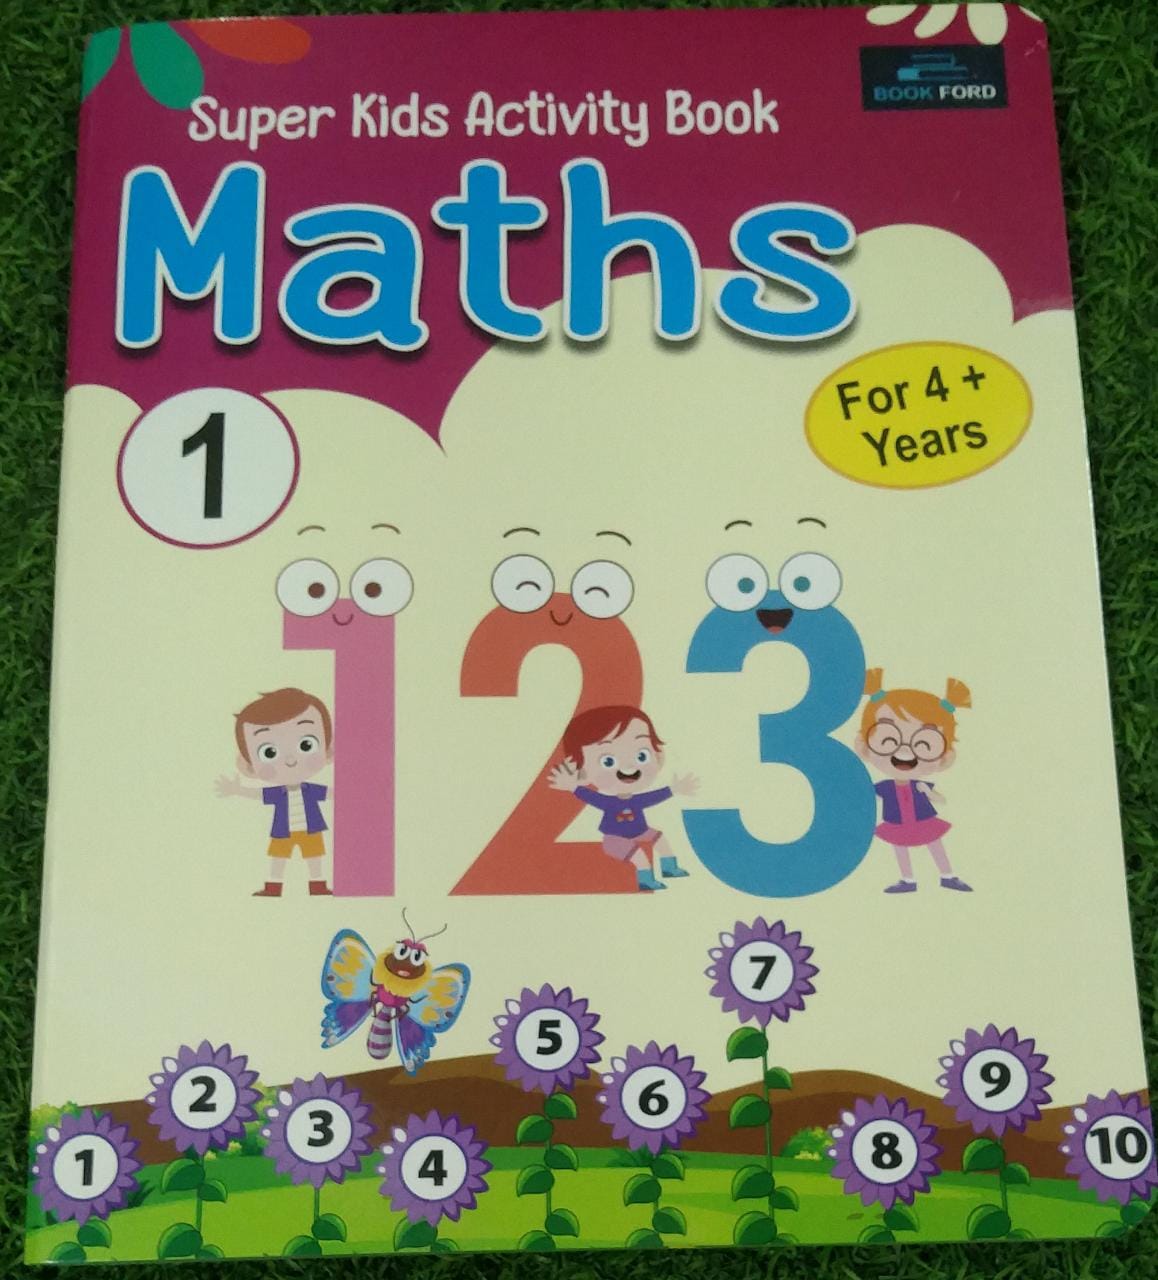 Super Kids Activity Book Maths